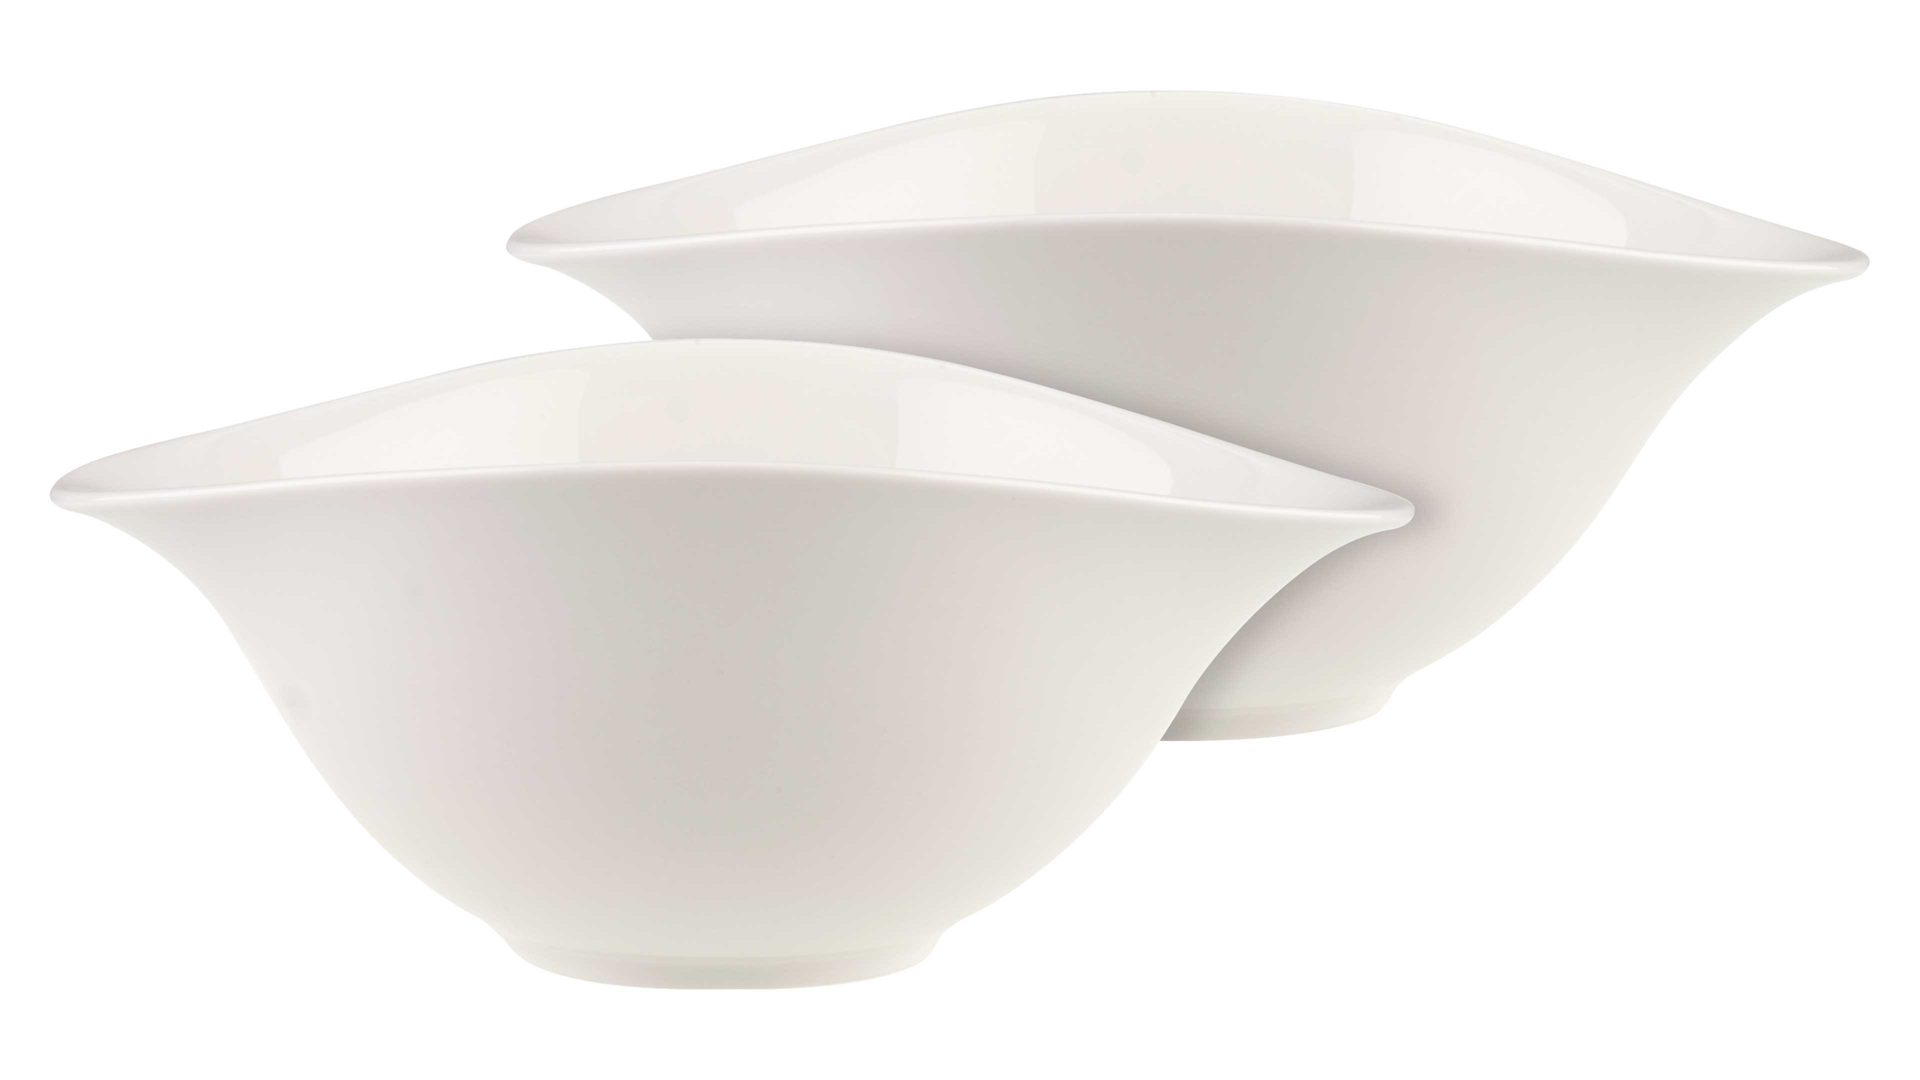 Salatschale Villeroy & boch aus Keramik in Weiß Villeroy & Boch Vapiano Salatschalen-Set weißes Premium-Porzellan - zweiteilig